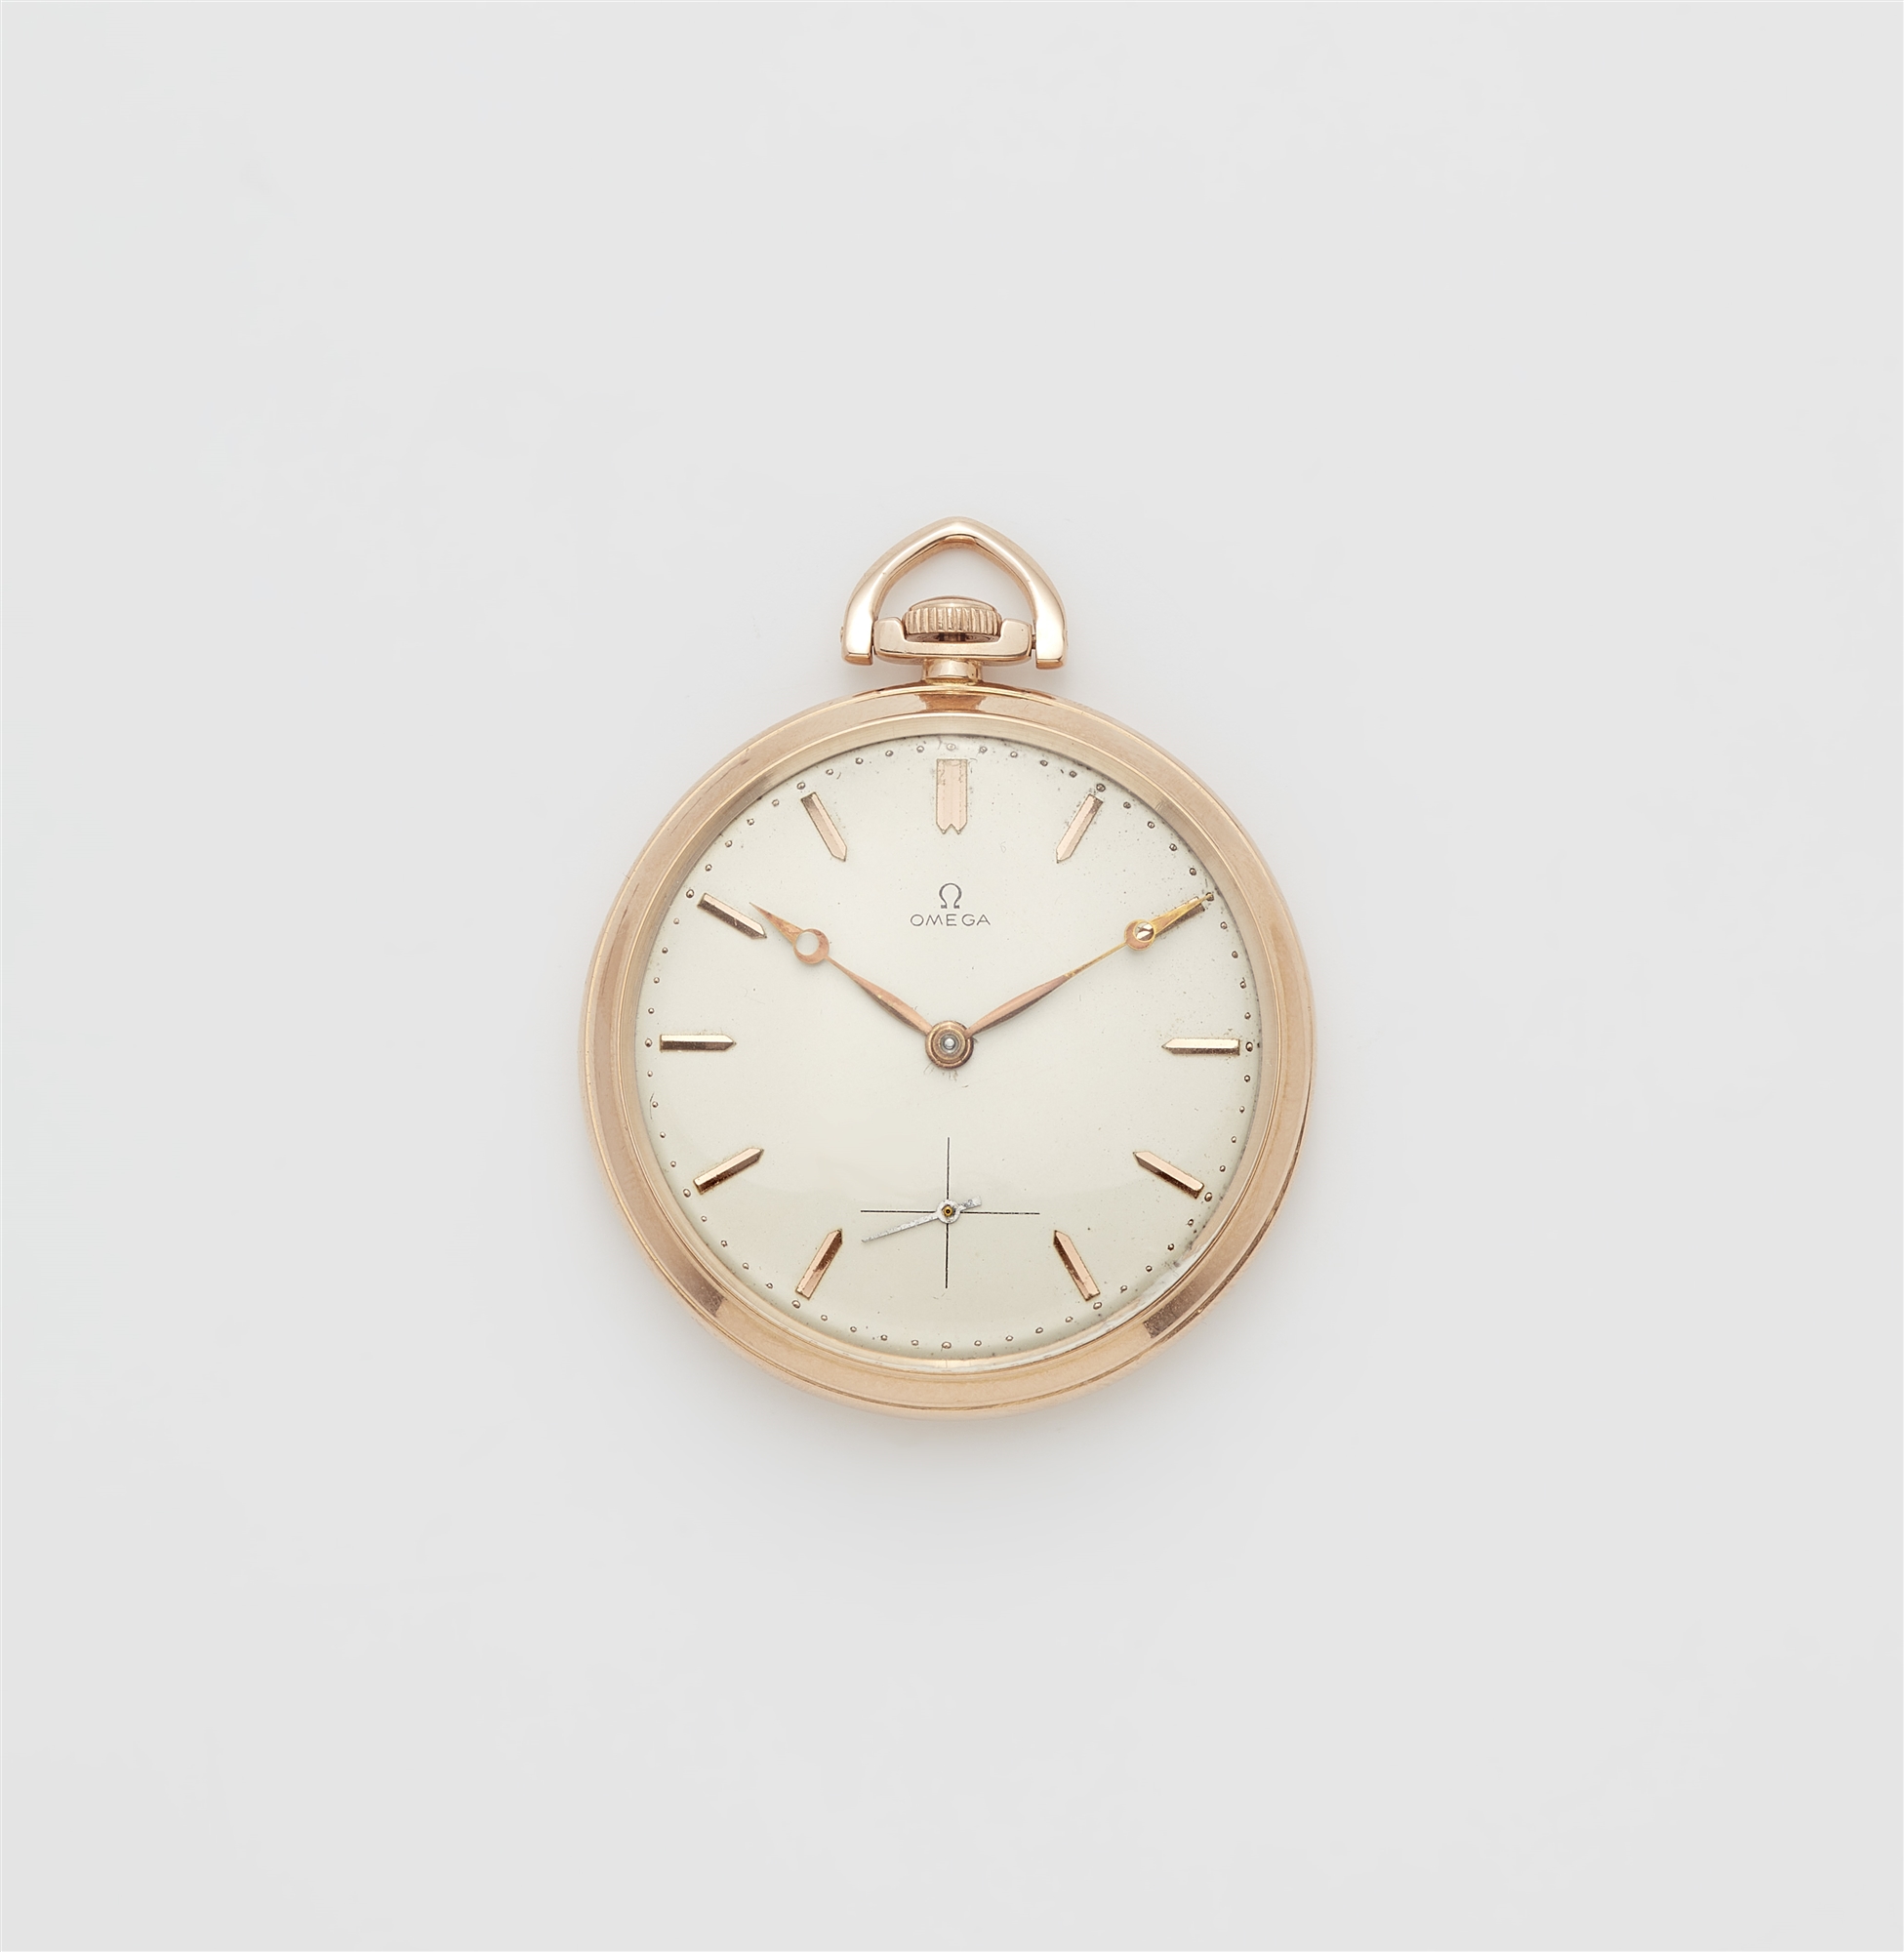 An 18k rose gold Omega Lepine pocket watch.